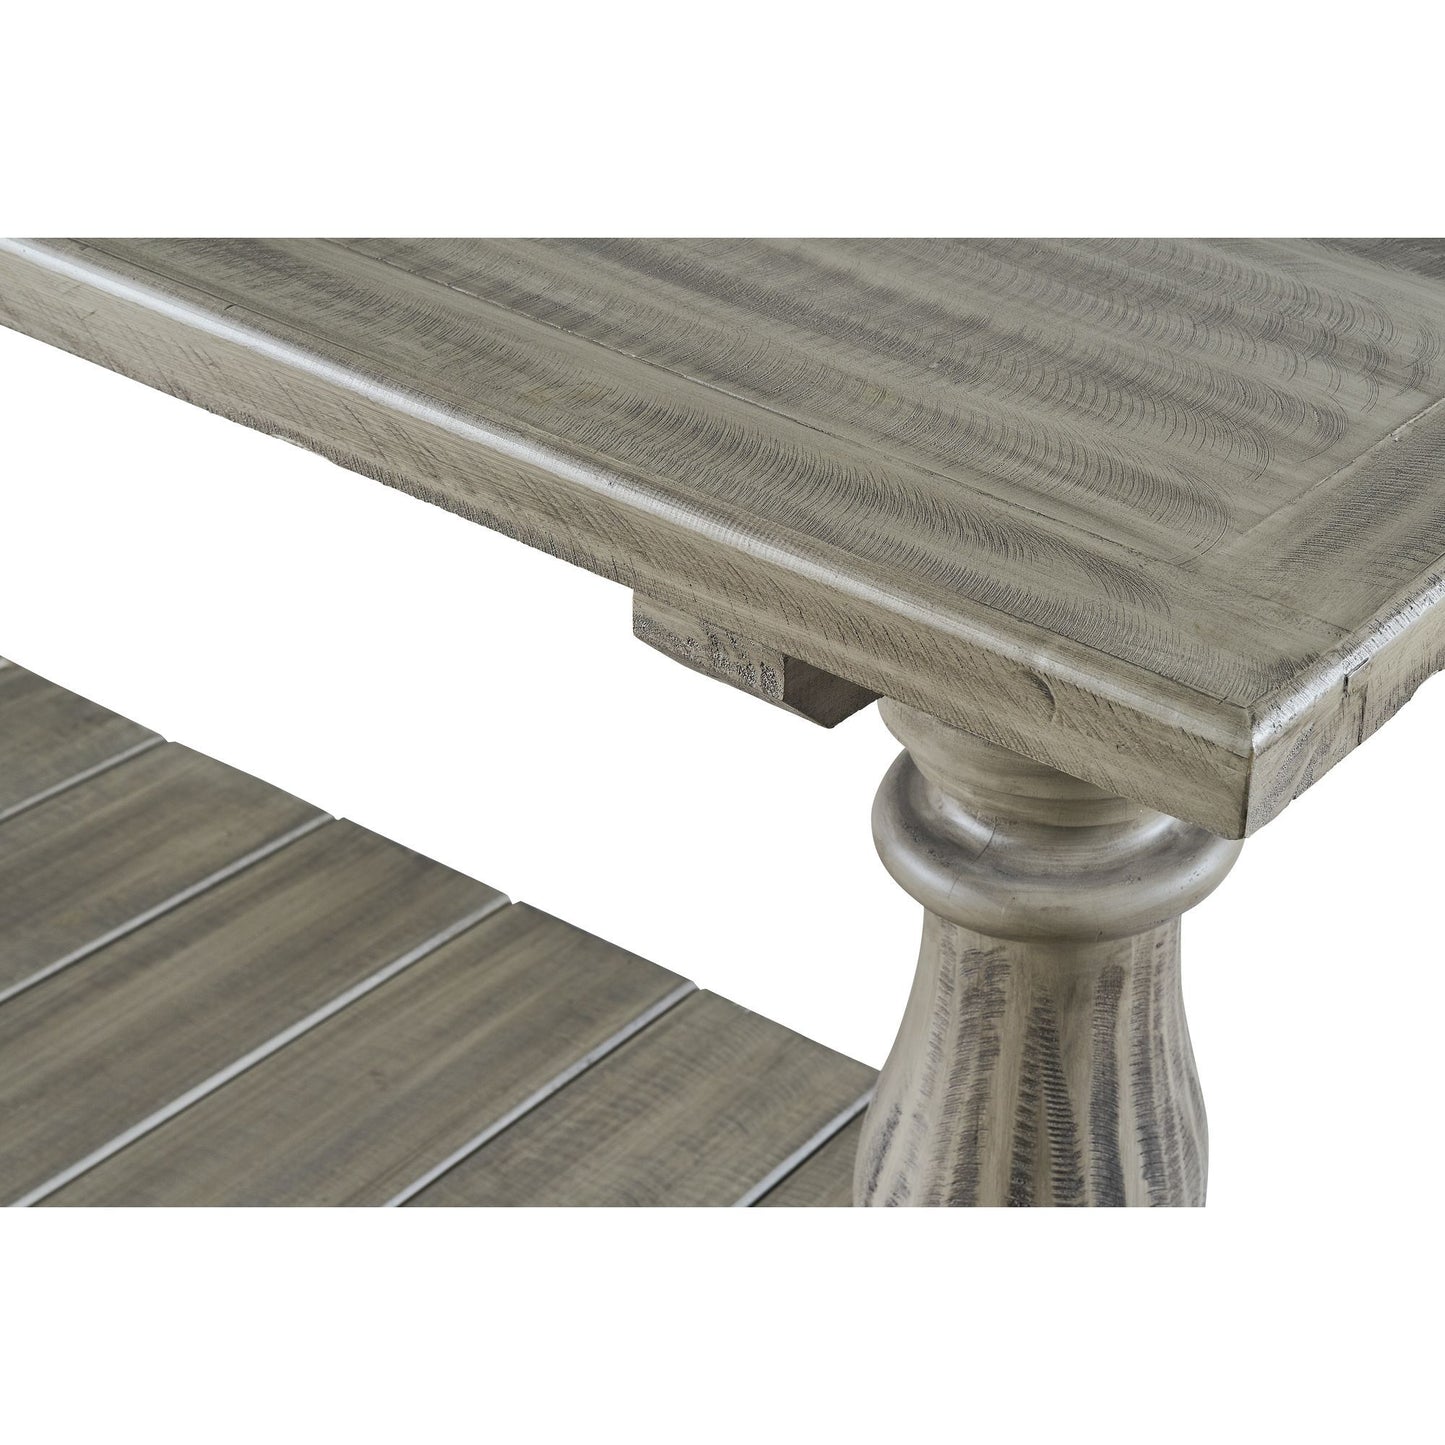 Ivan - Four Pedestal End Table - Smoke Grey